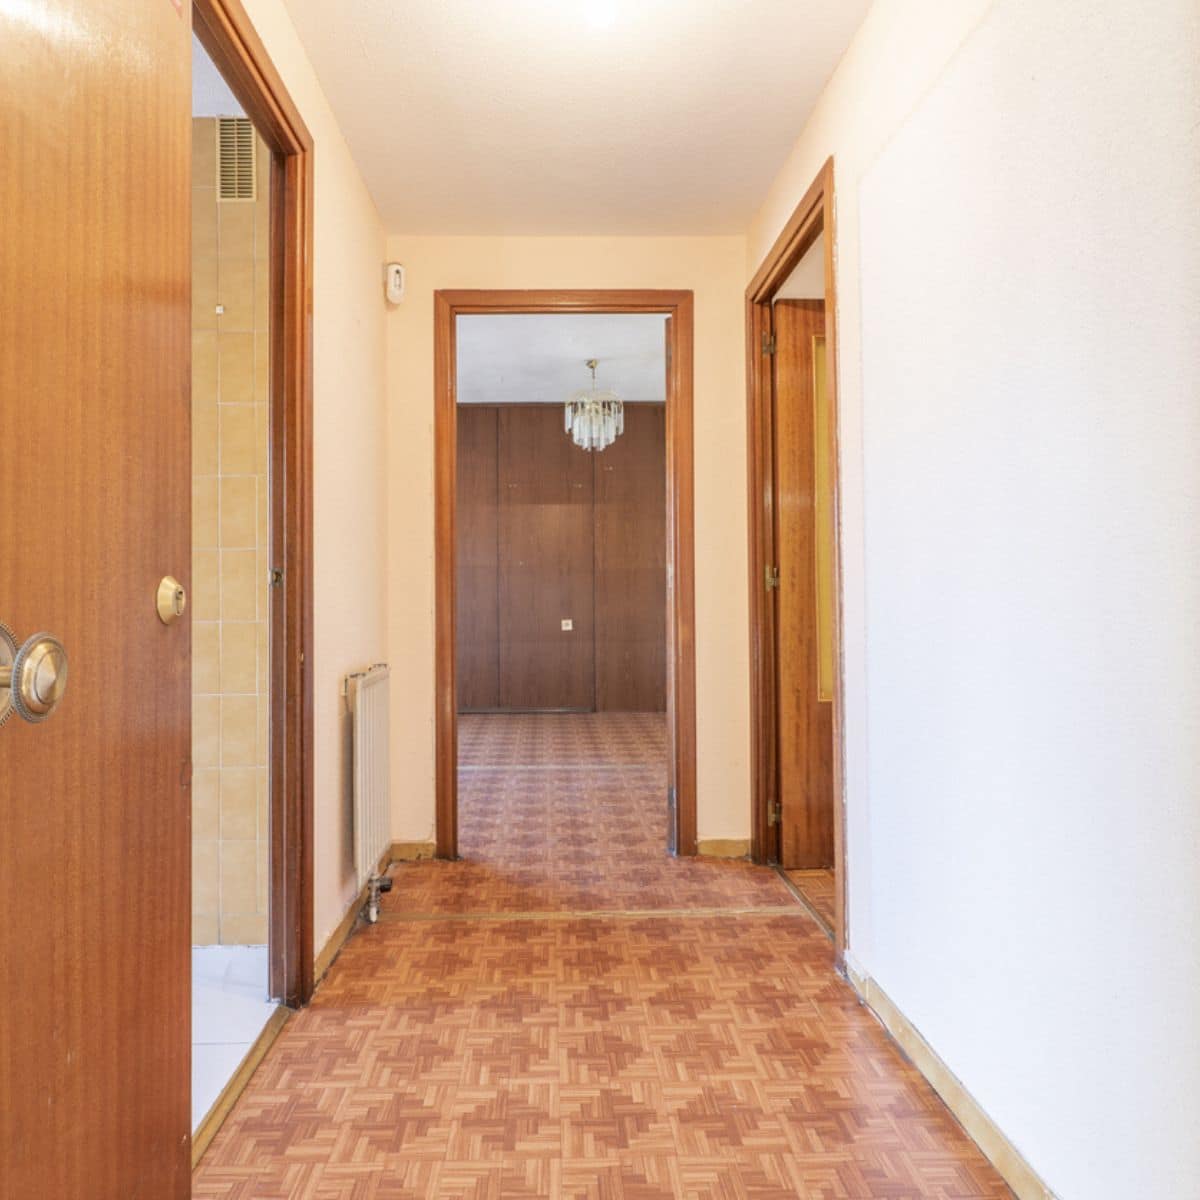 a long hallway with wooden doorways